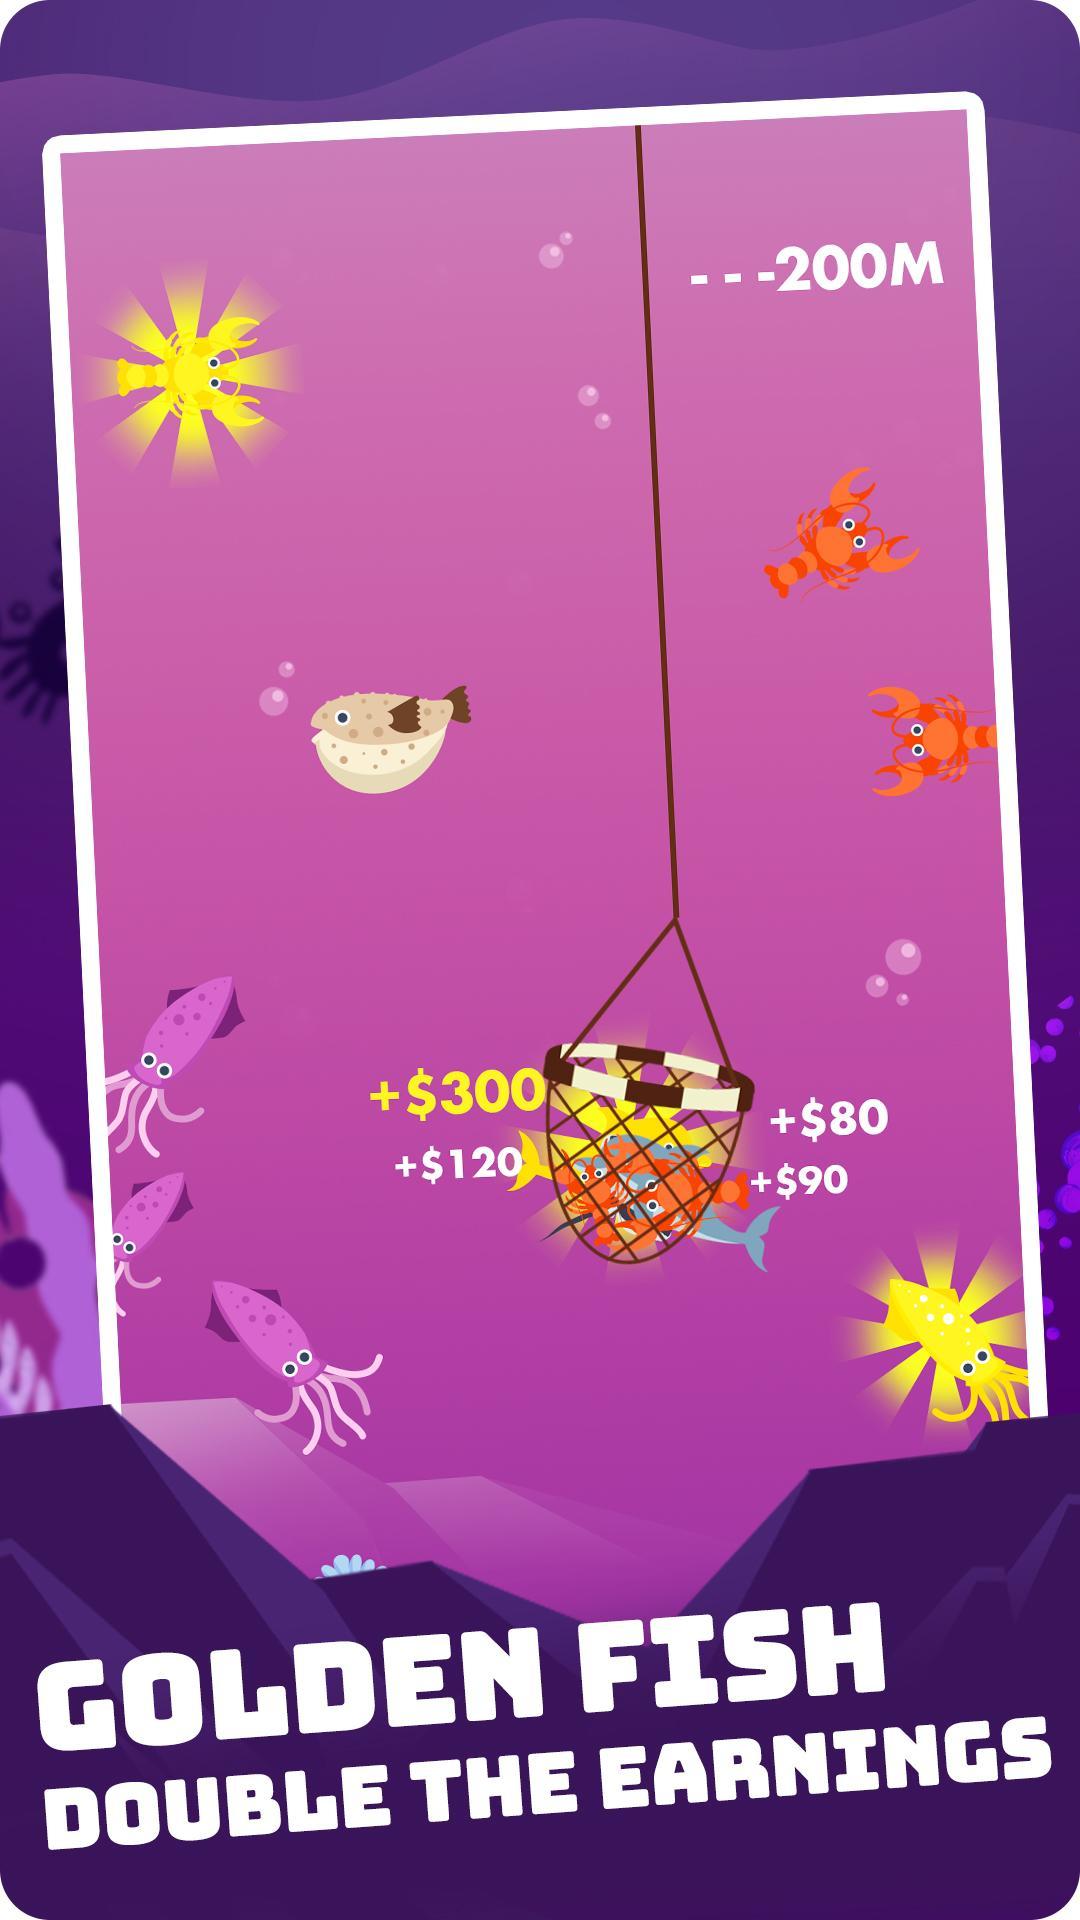 Mr.Fish screenshot game